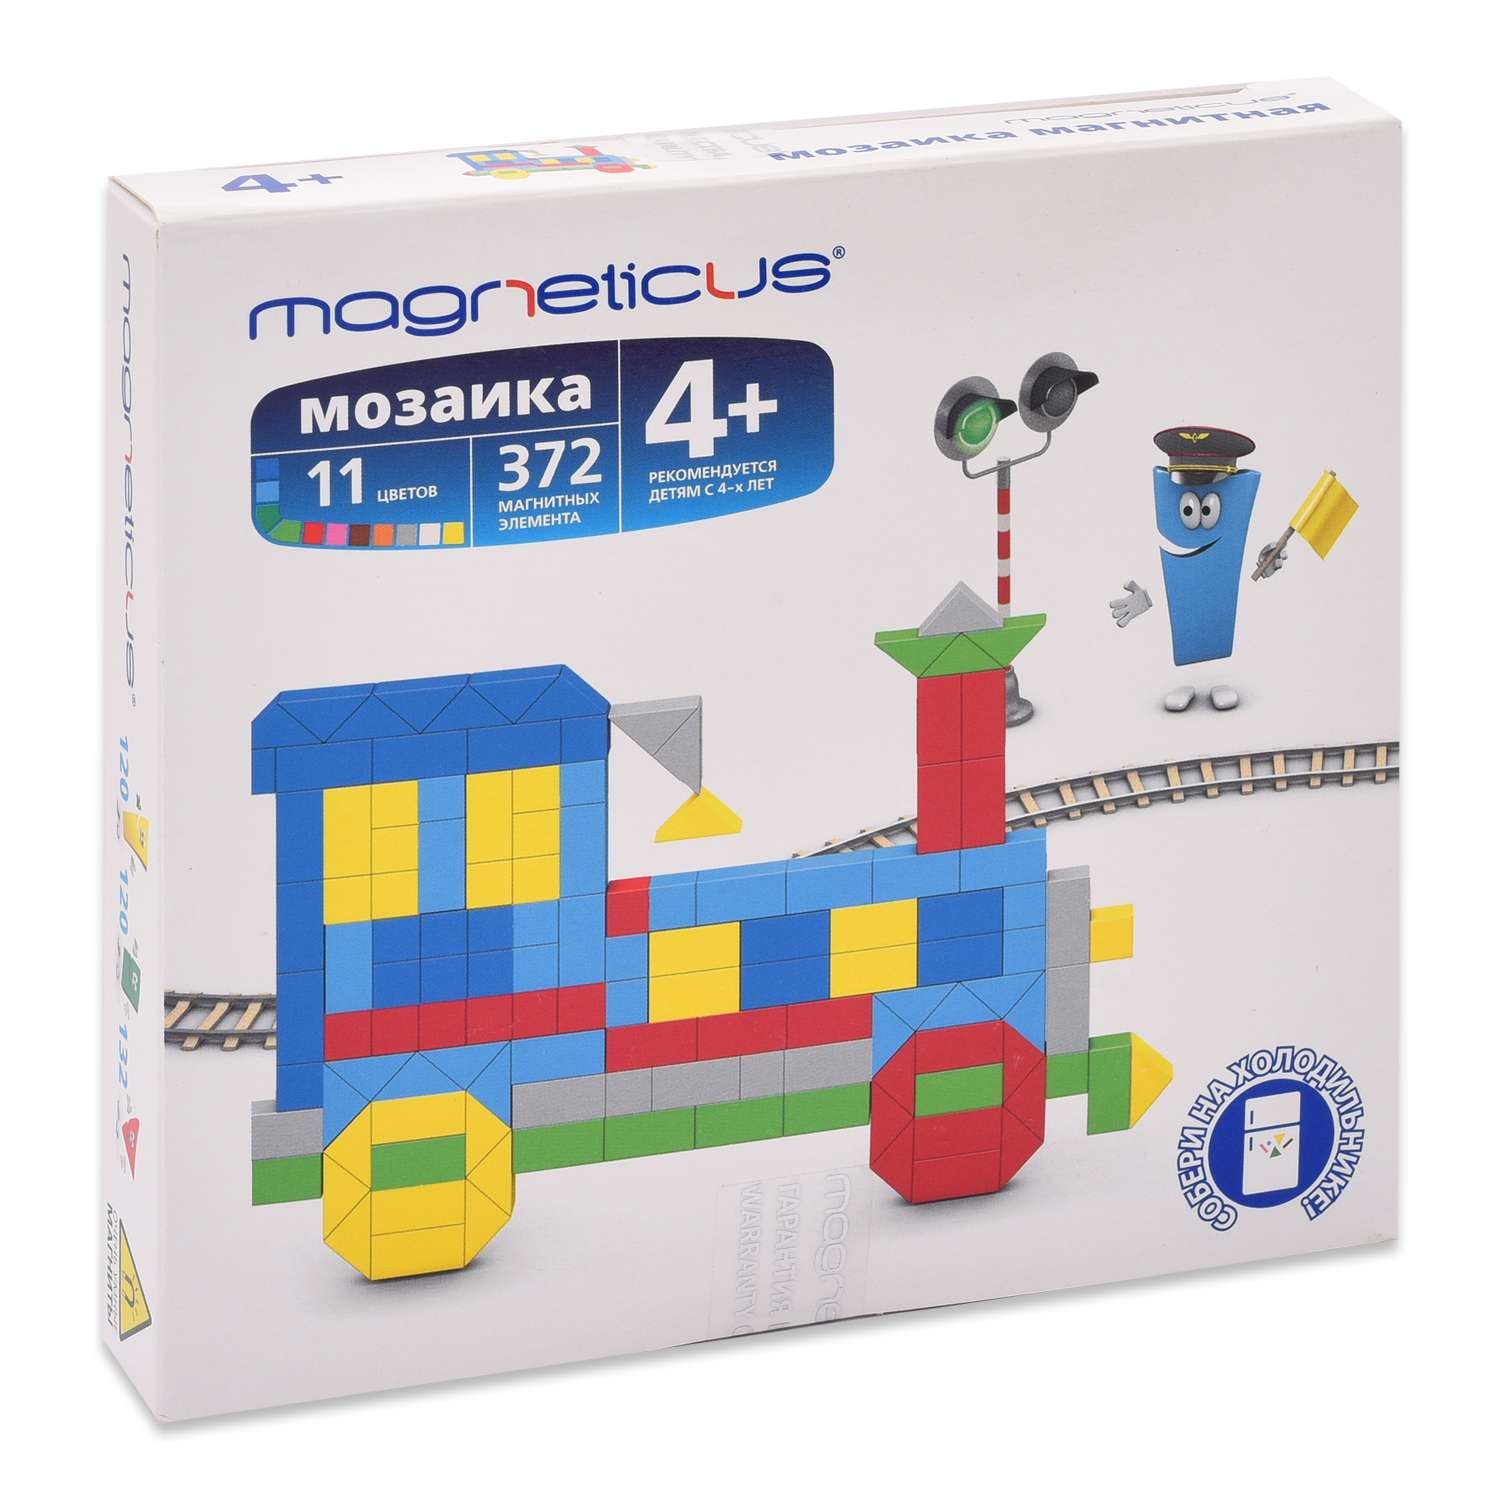 Мозаика магнитная MAGNETICUS Поезд 372 элемента 11 цветов MM-013 - фото 1